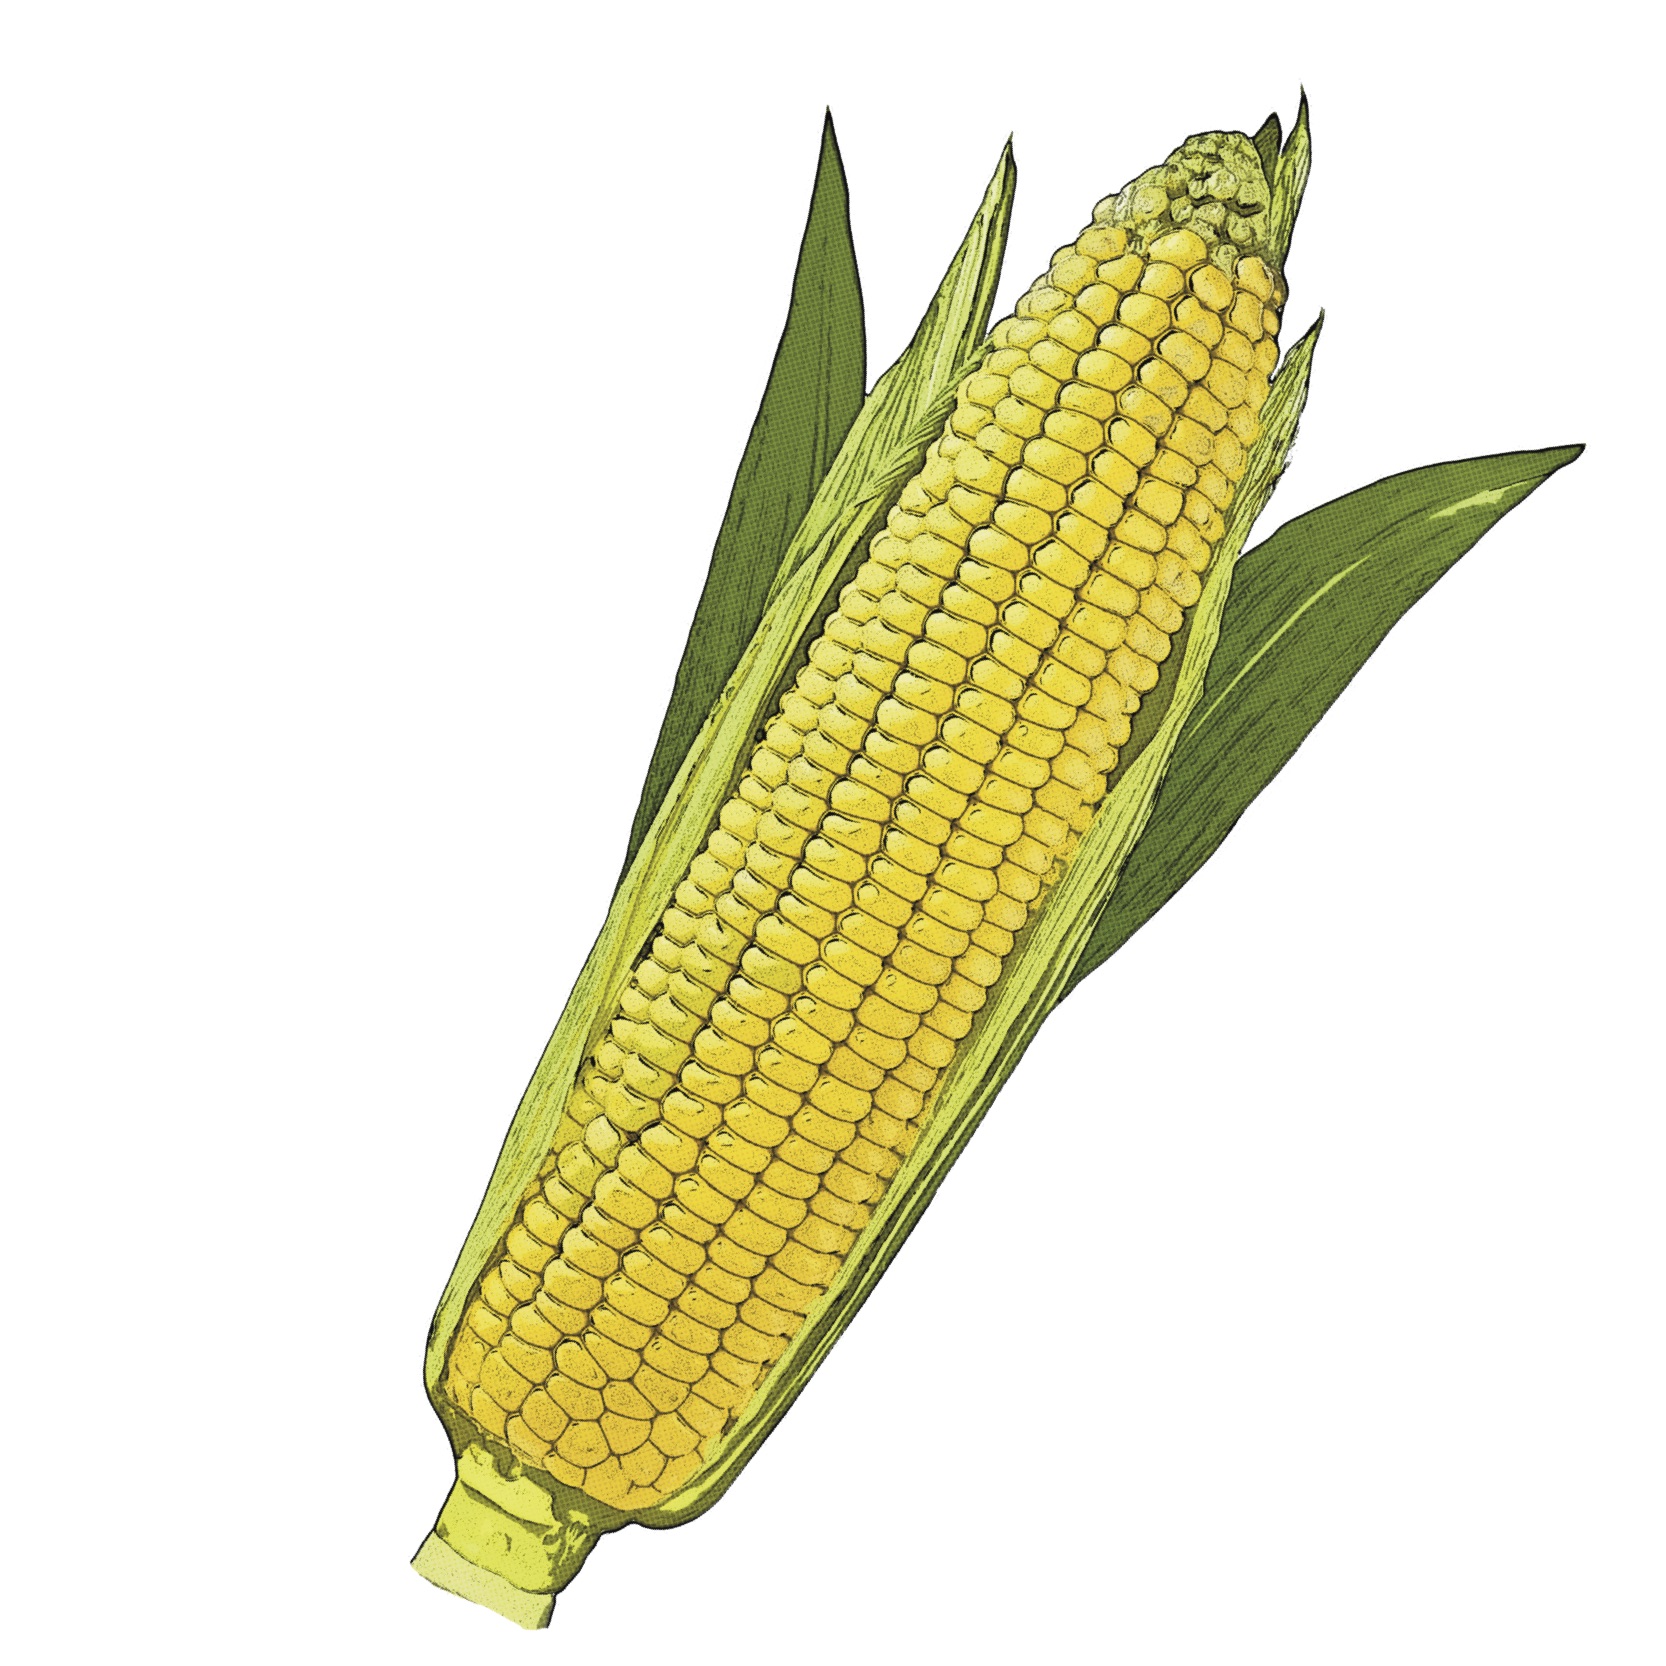 Find Corn Recipes